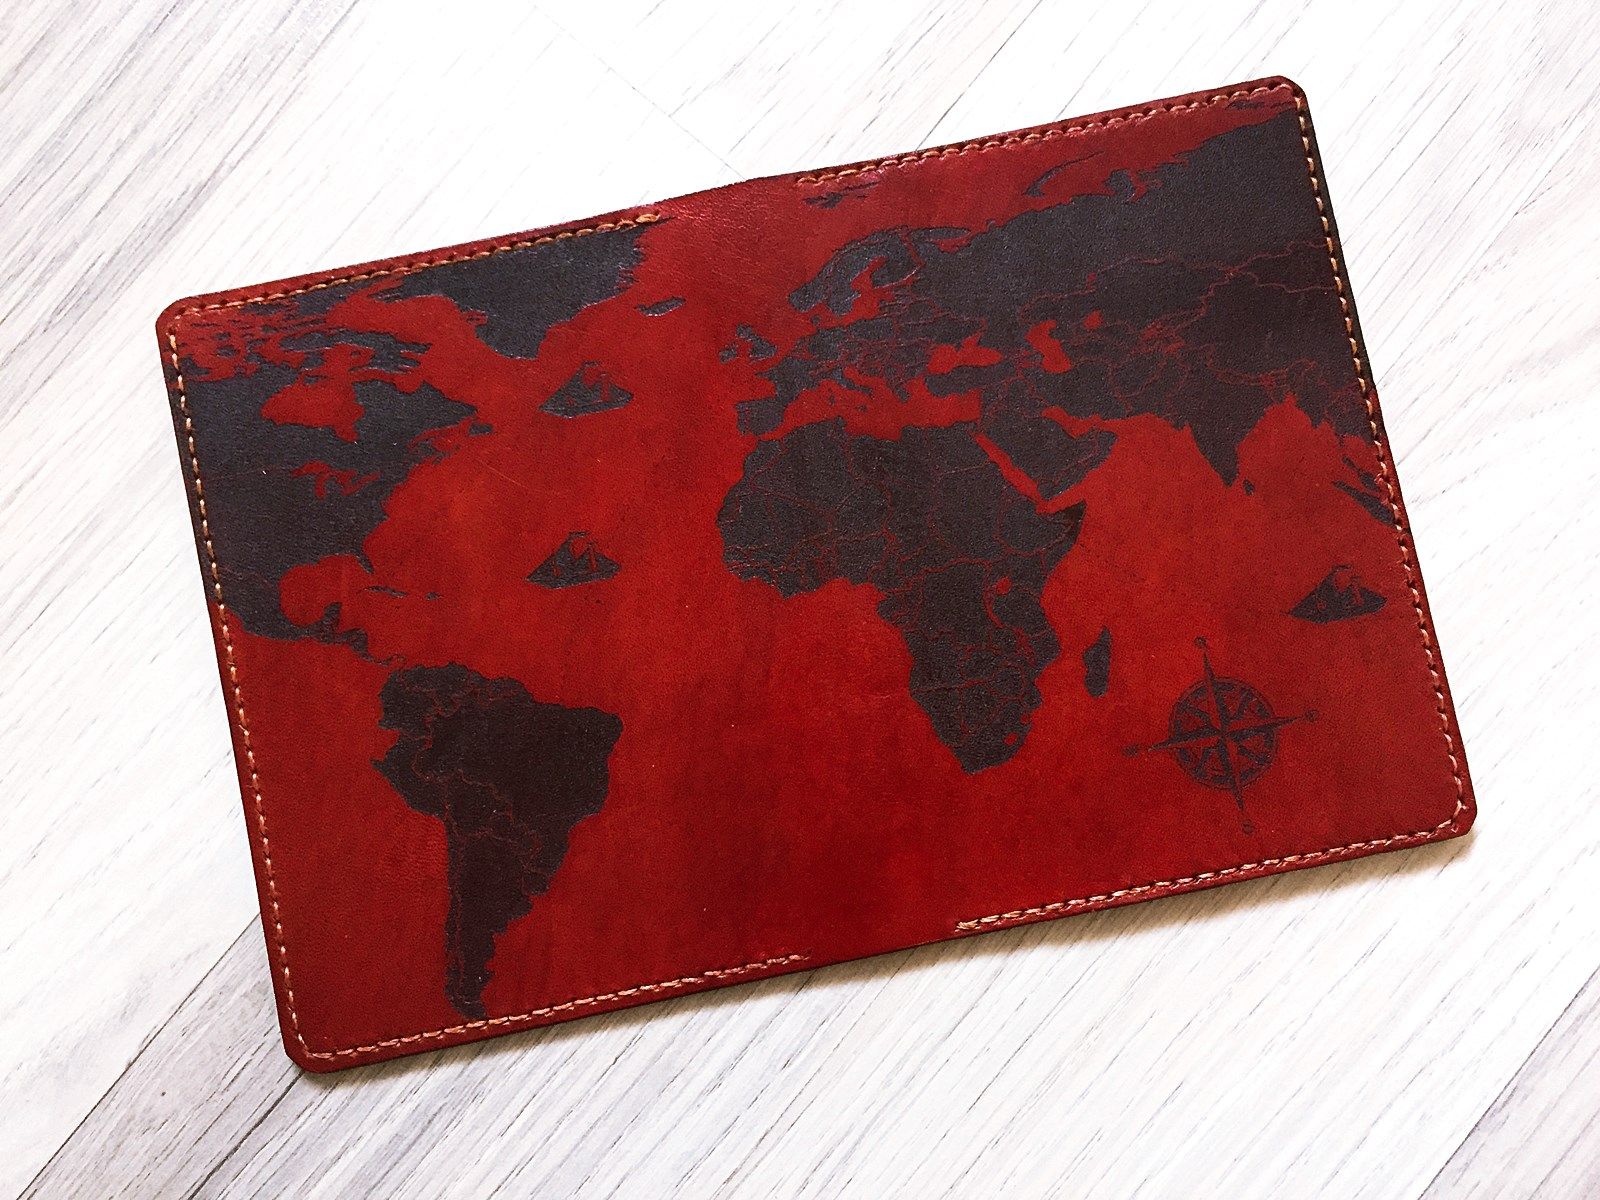  Ví đựng Hộ Chiếu/Passport da bò handmade - Bản đồ thế giới vintage 